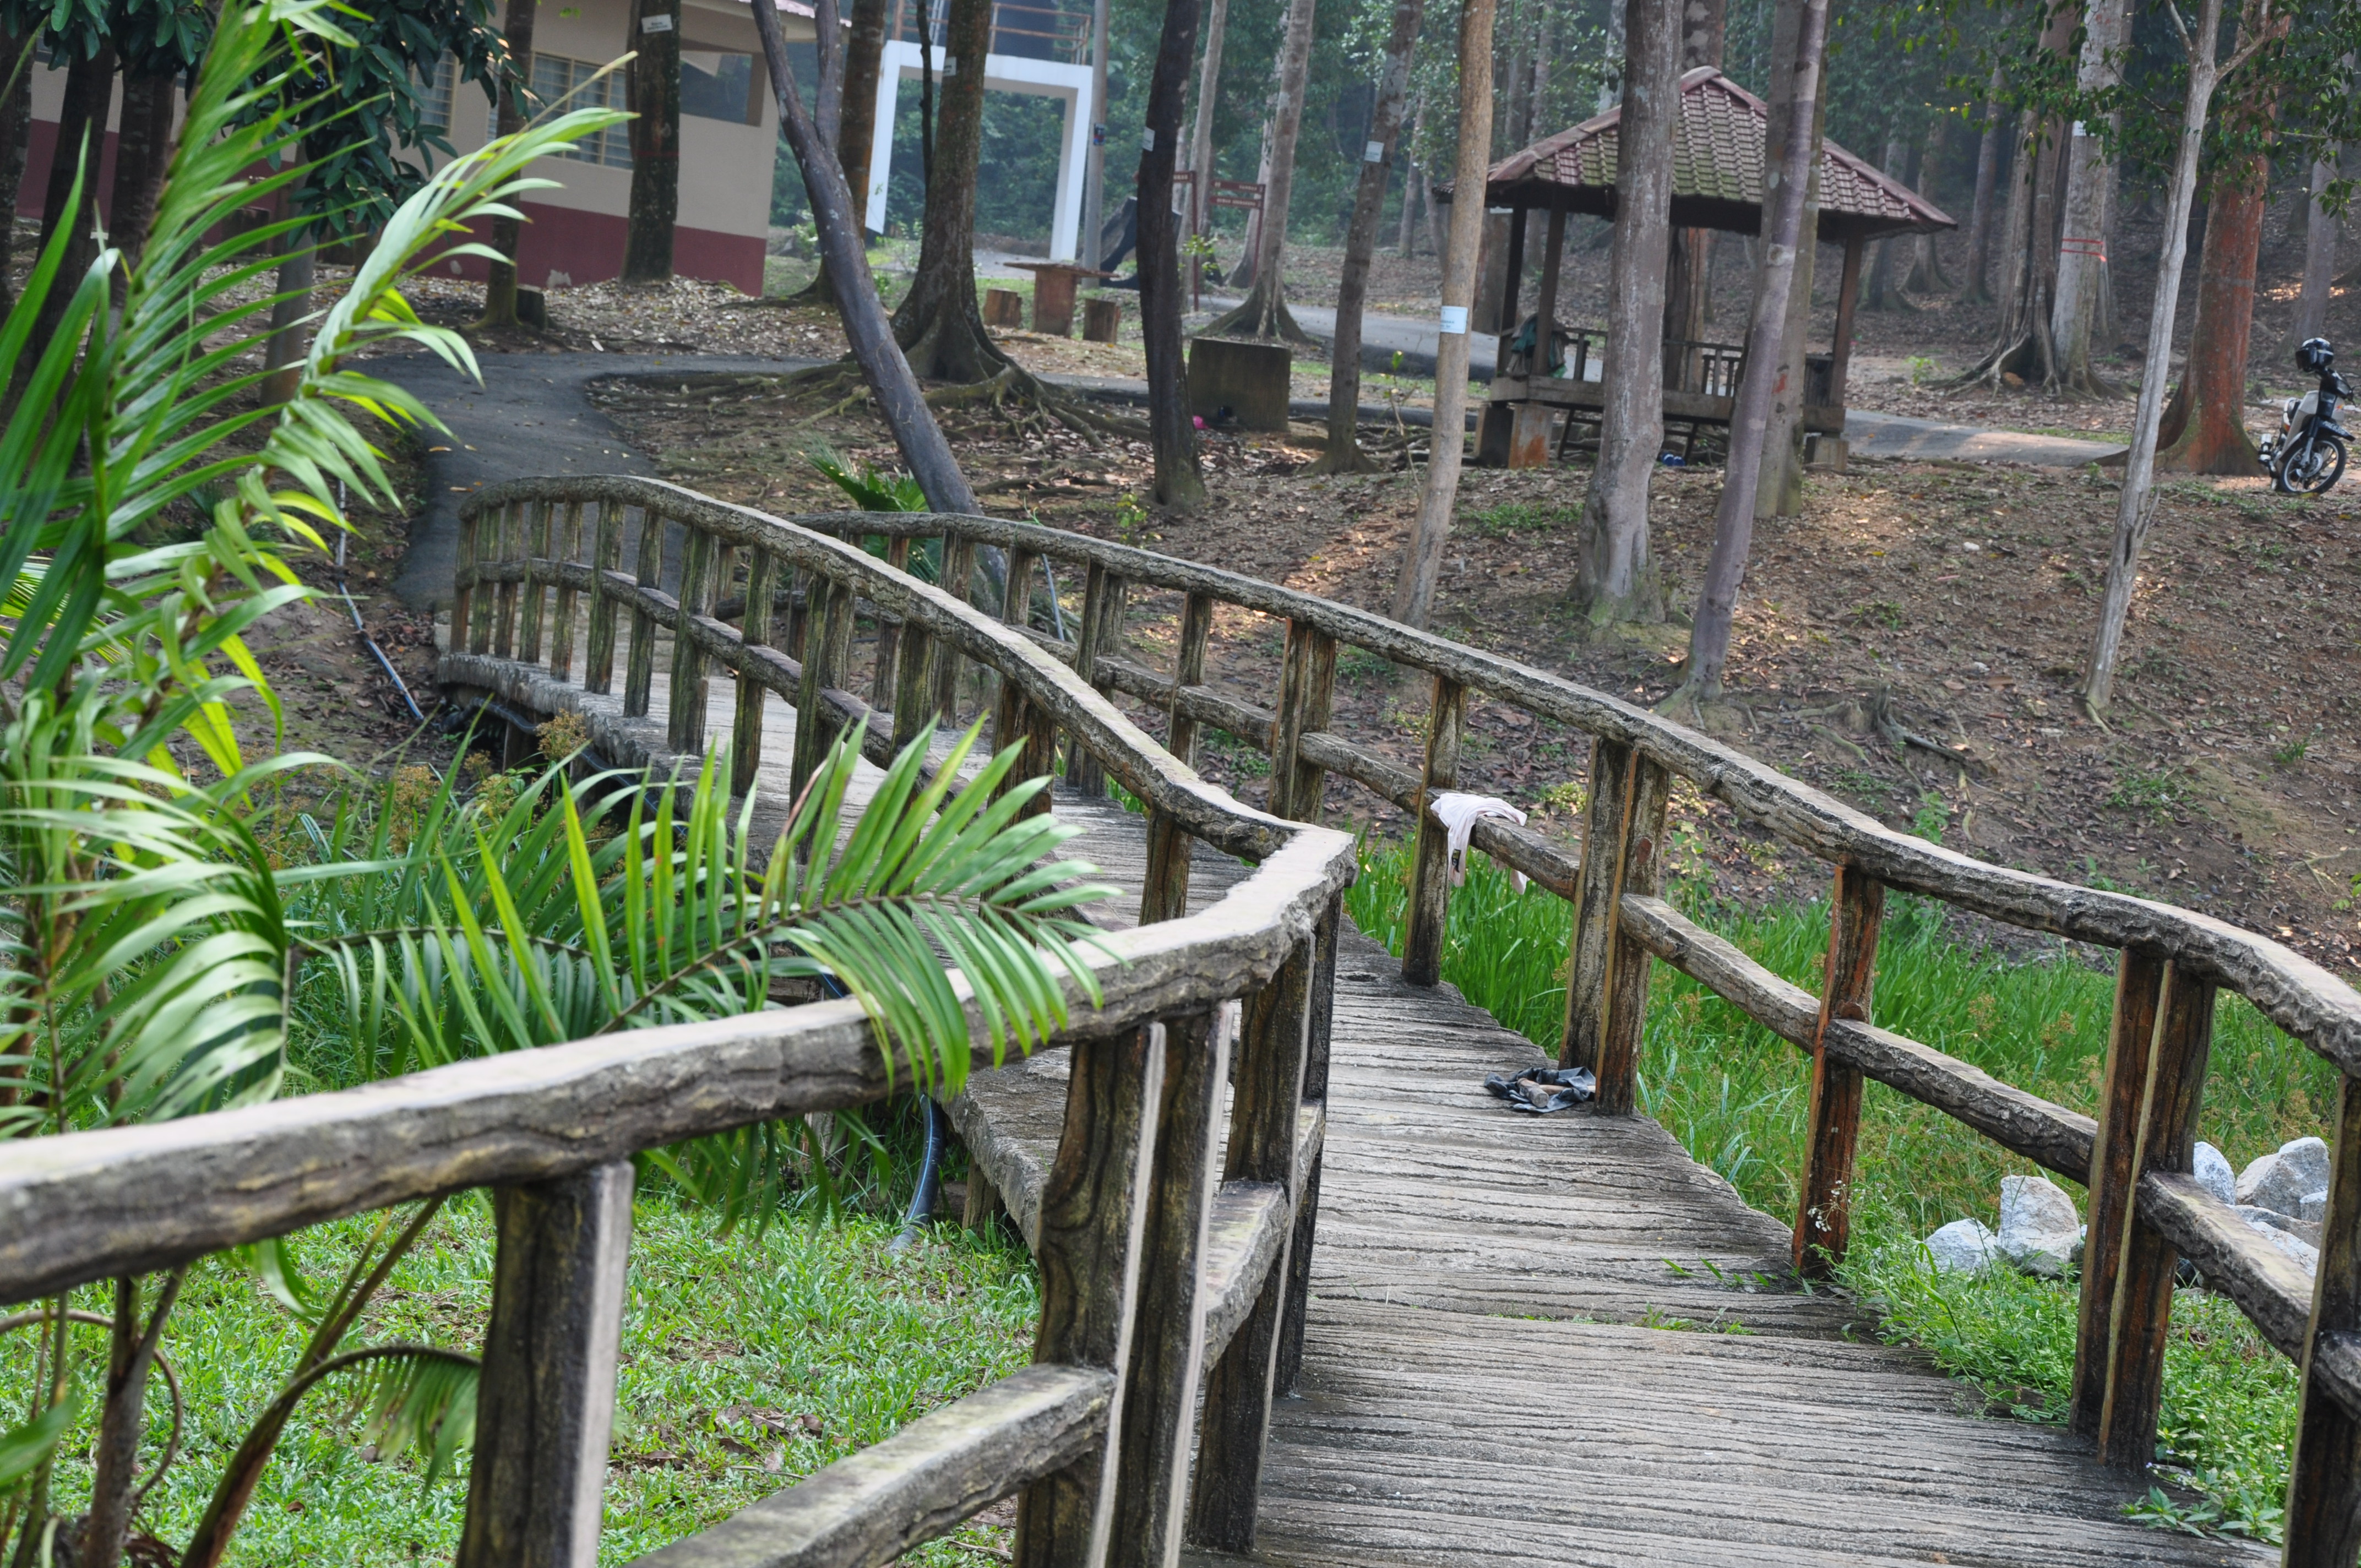 Sungai Udang Forest Eco-Park